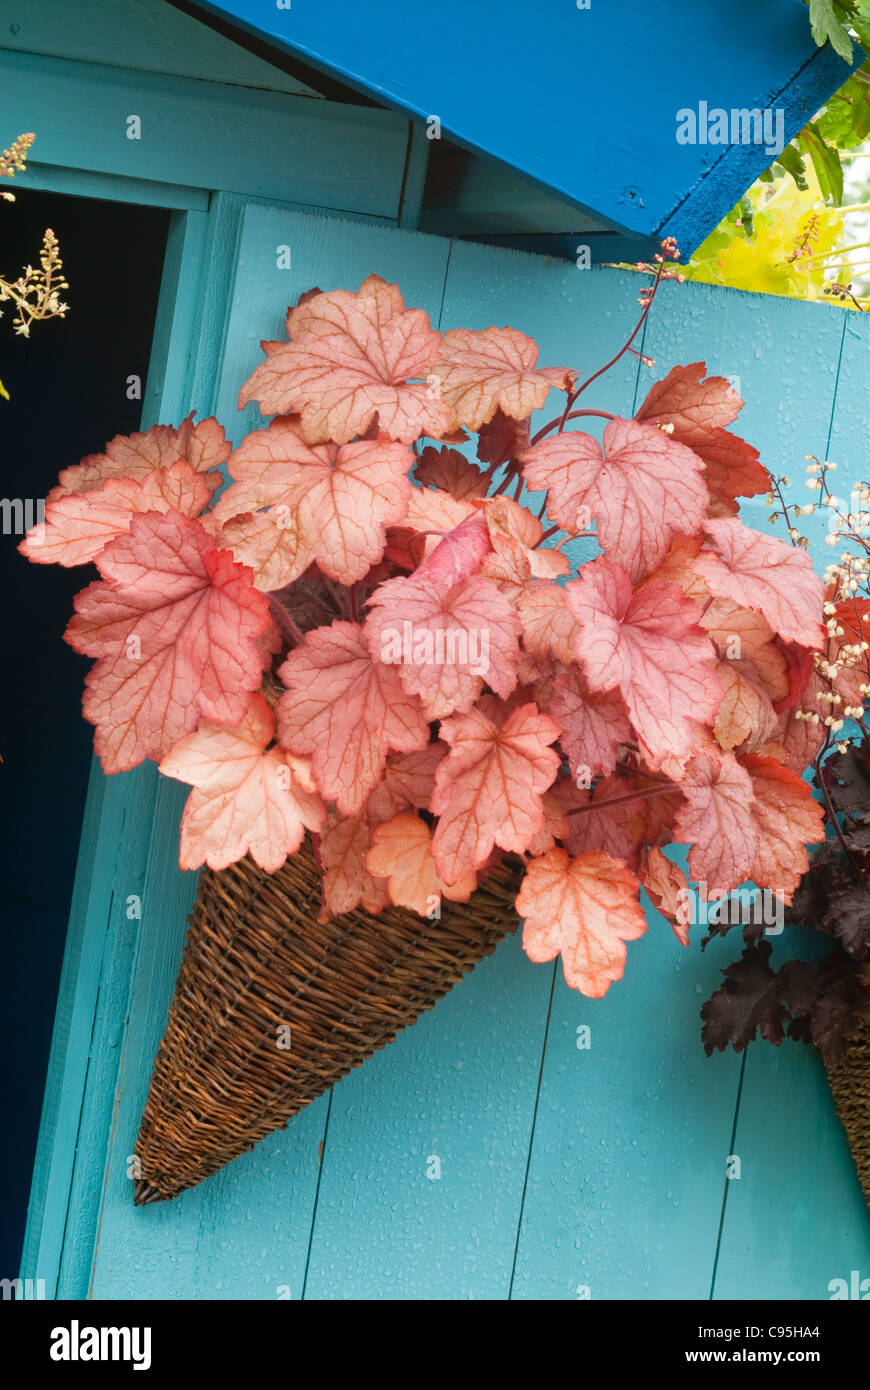 Heuchera nel recipiente contenitore giardino appeso alla parete blu casa, foglie d'arancio sorprendente distintivo di vimini lascia pianta perenne Foto Stock